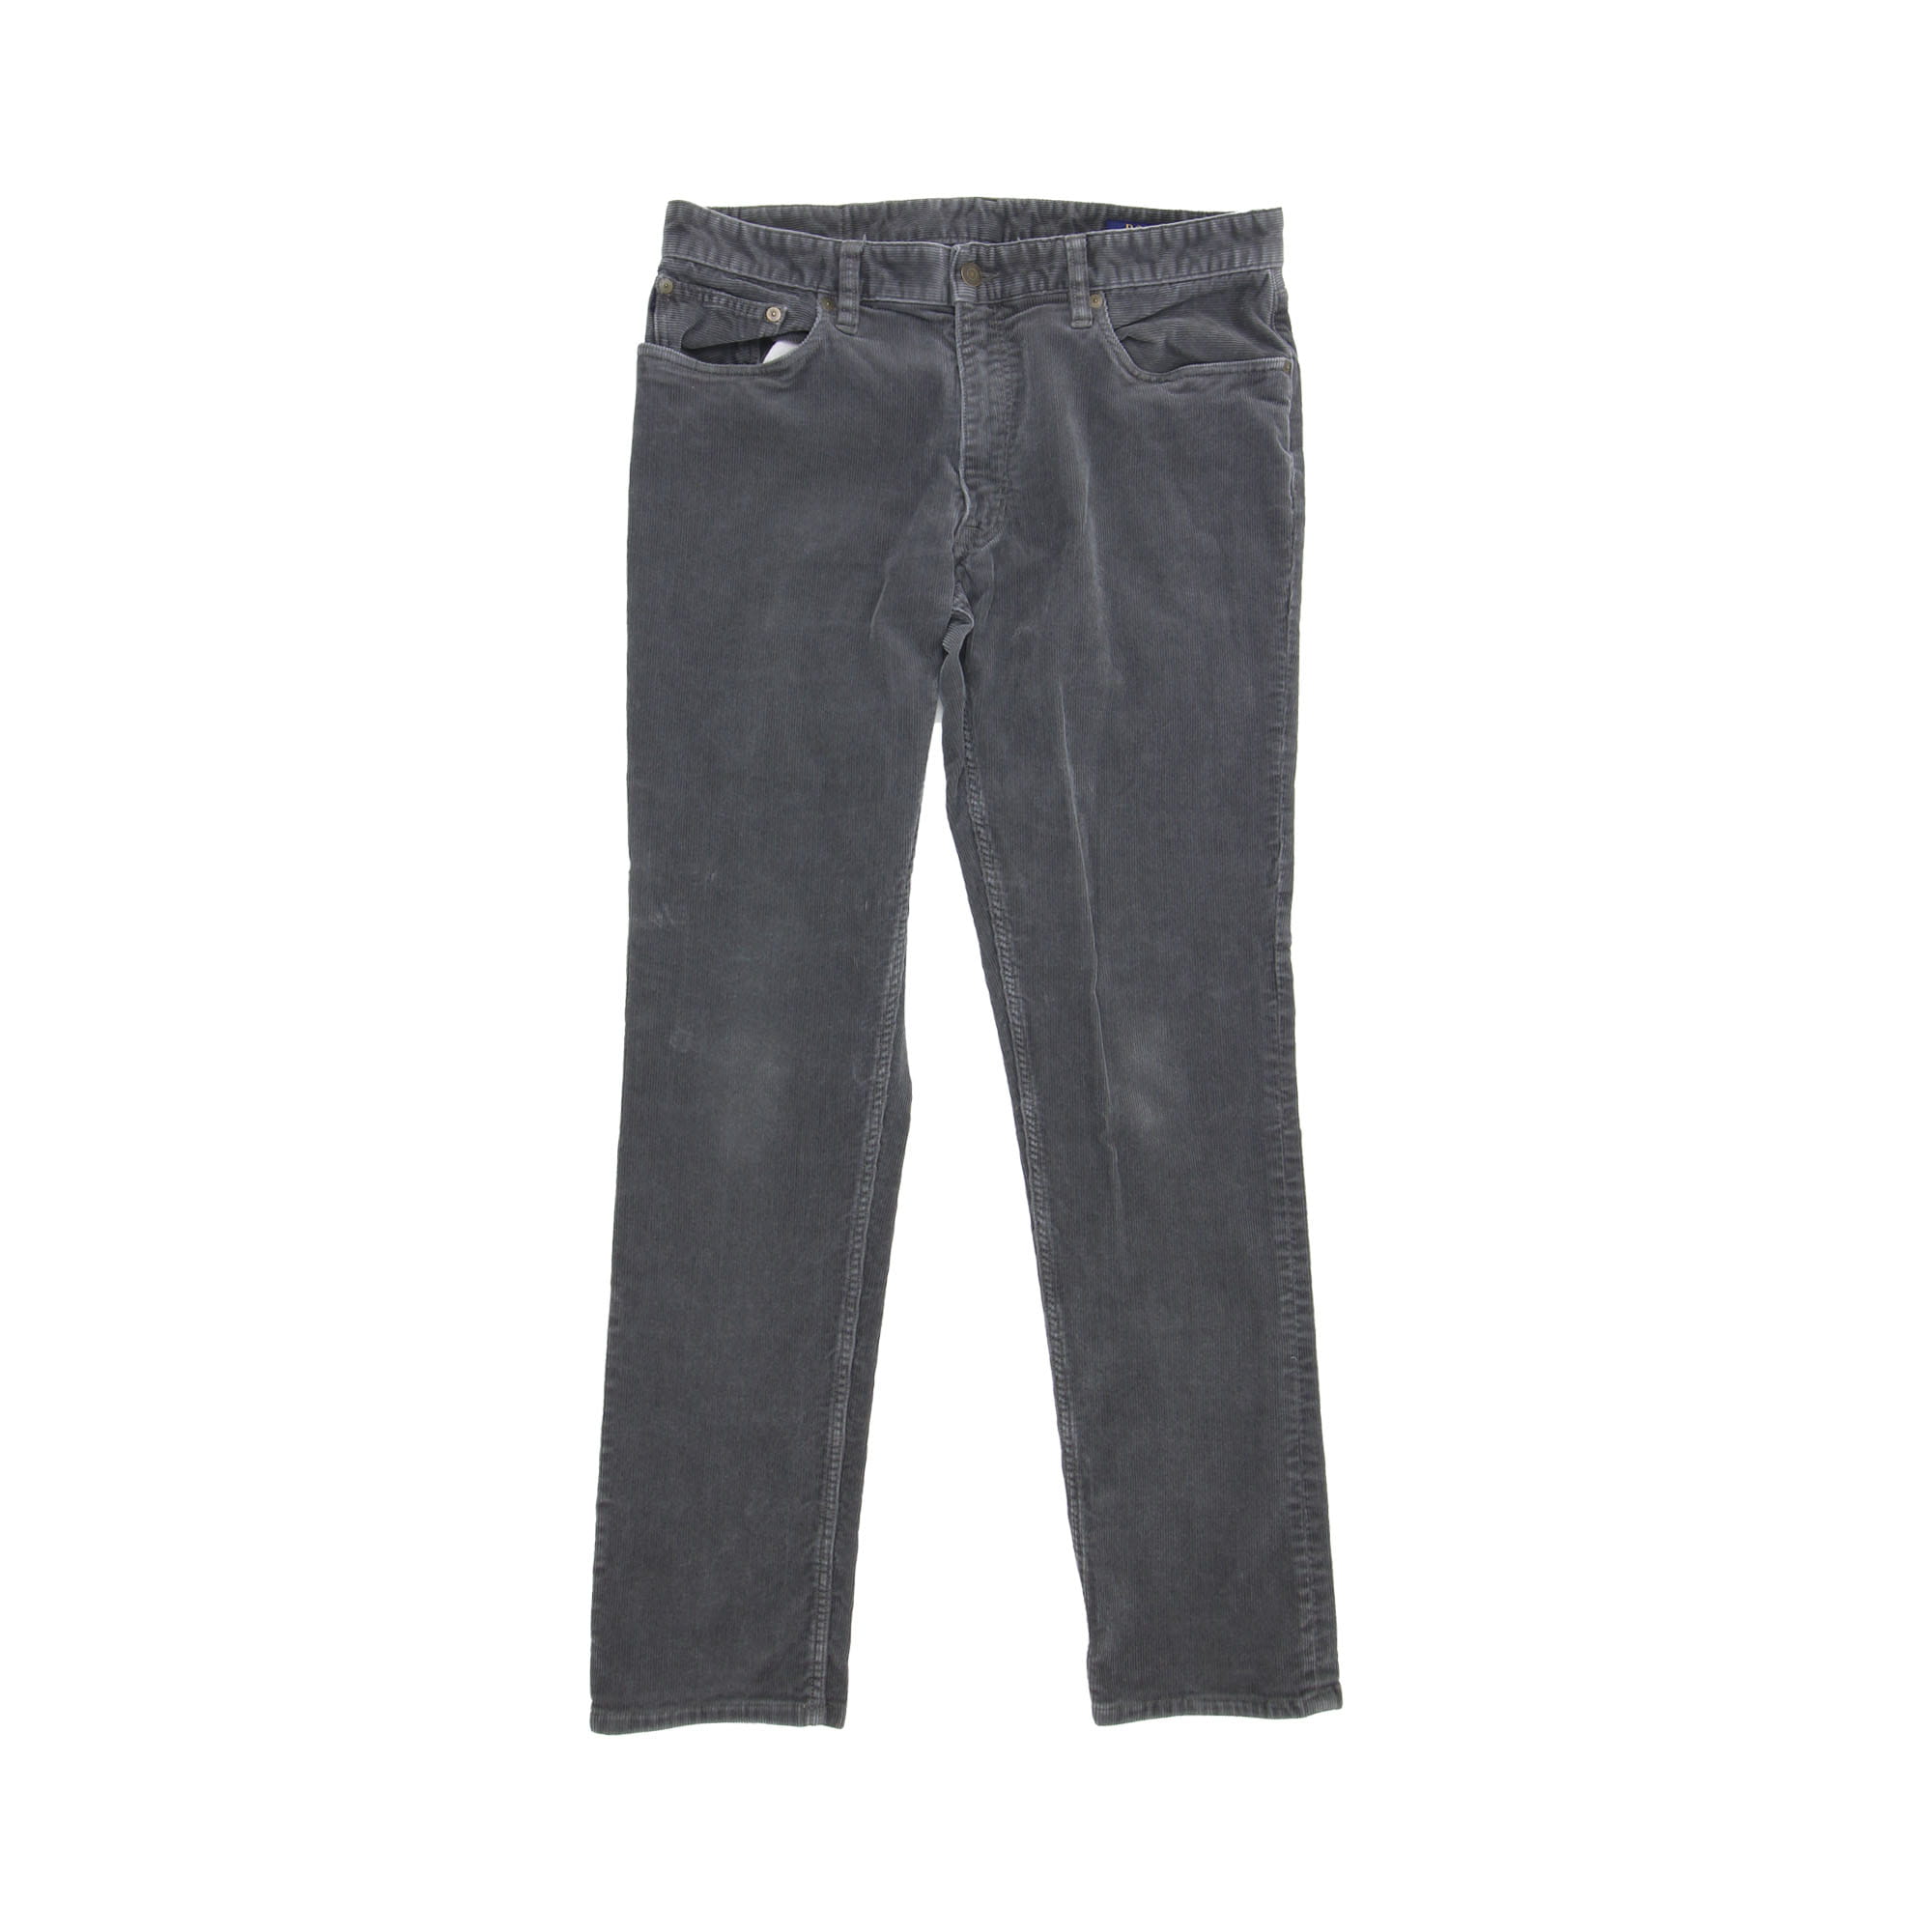 Polo Ralph Lauren Cord Pants Grey -  W33 L30